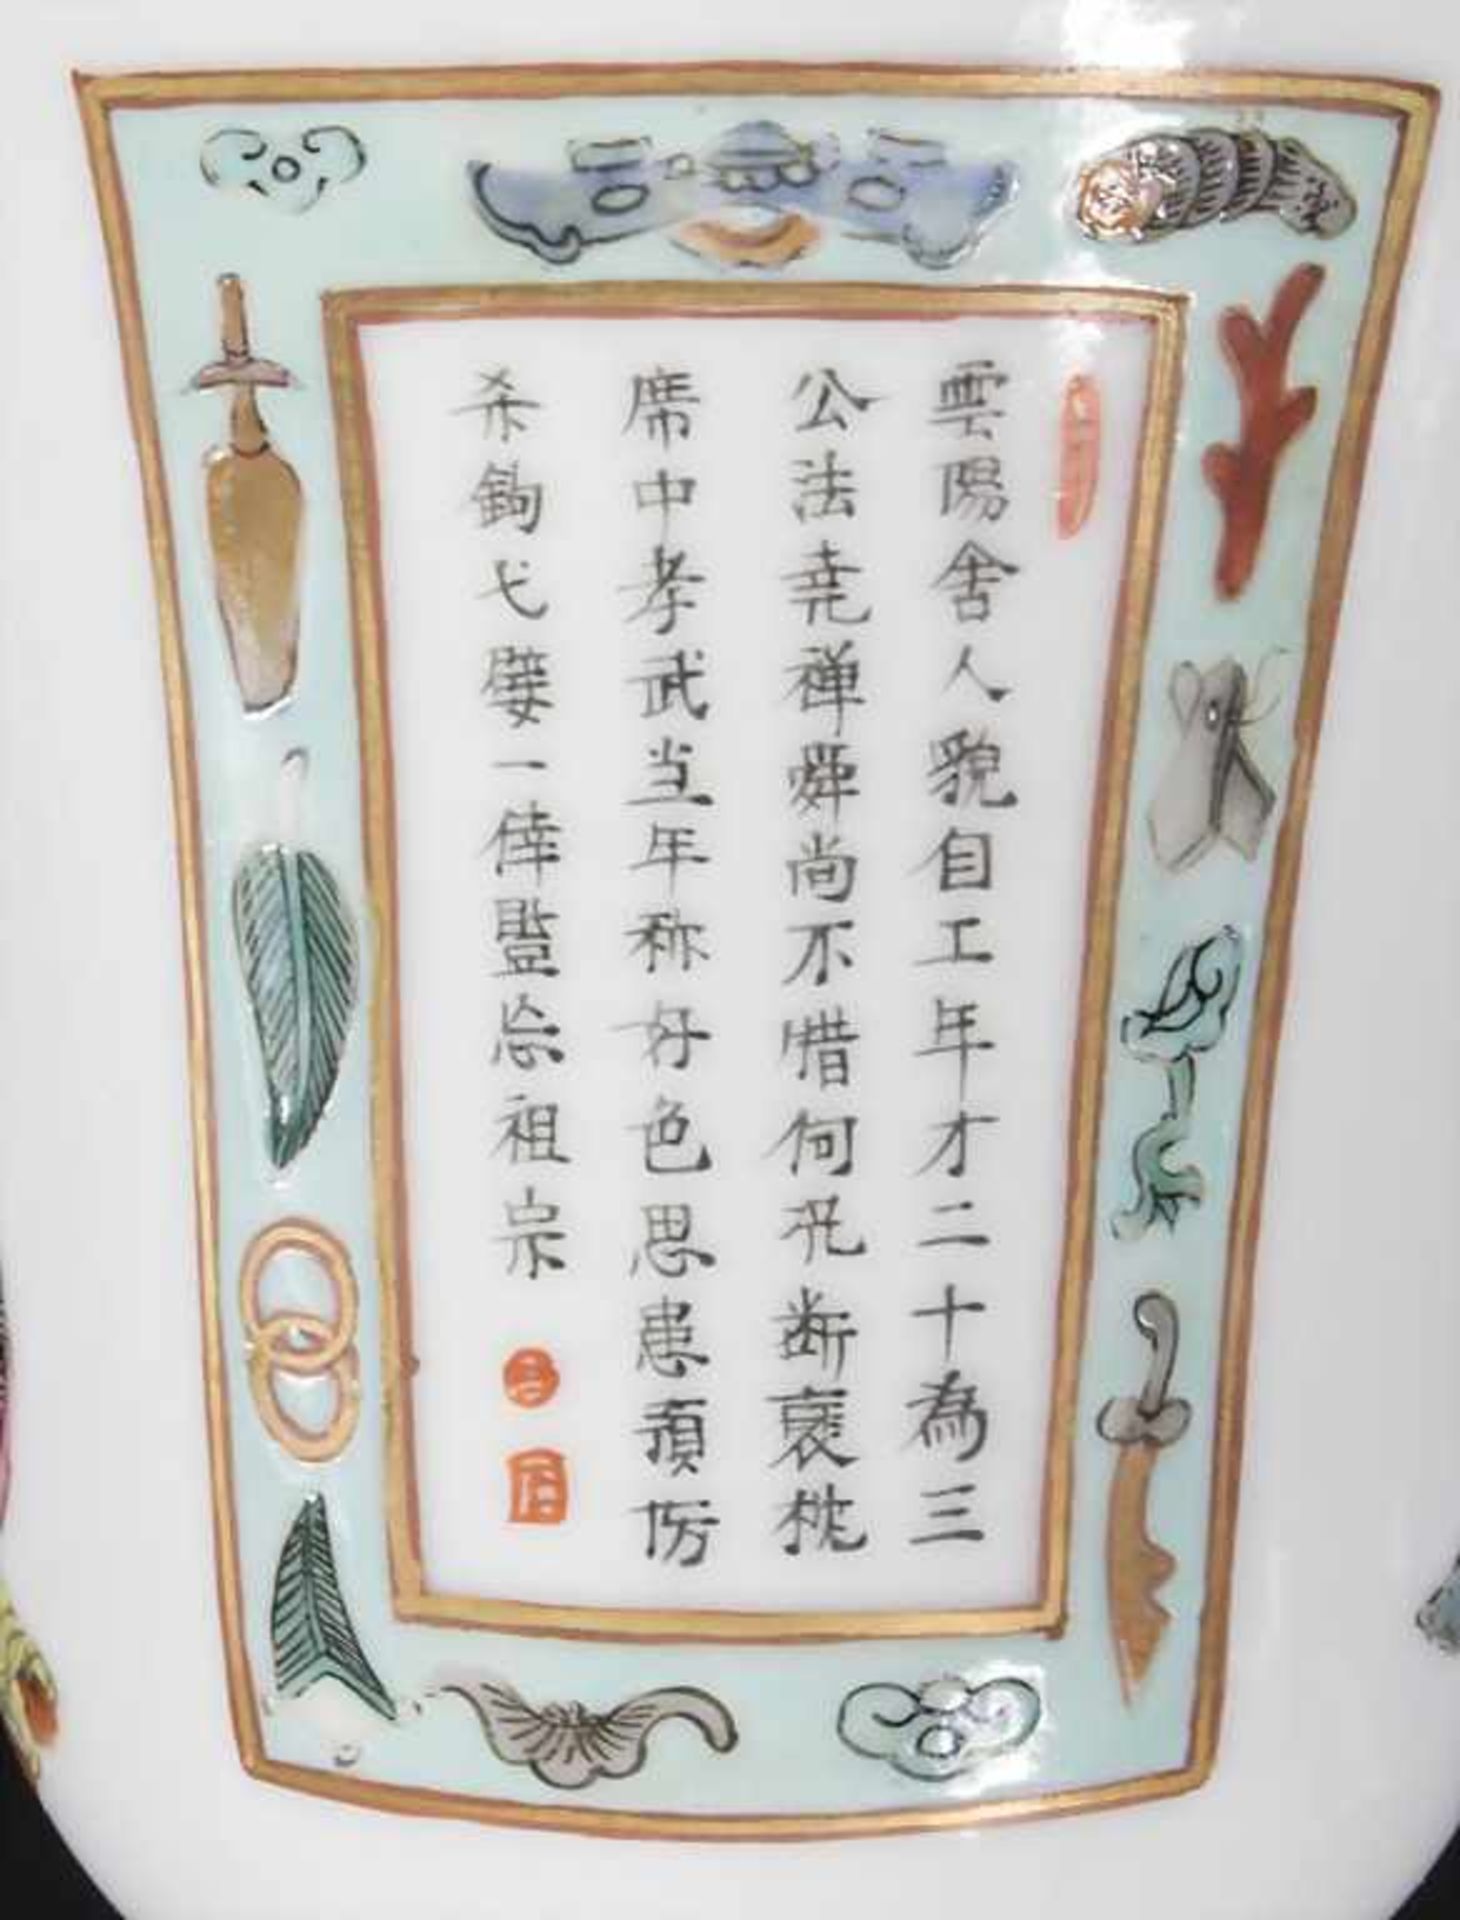 Porzellan-Deckelkumme / A porcelain lidded bowl, China, Qing-Dynastie (1644-1911), 18./19. Jh. - Bild 6 aus 6